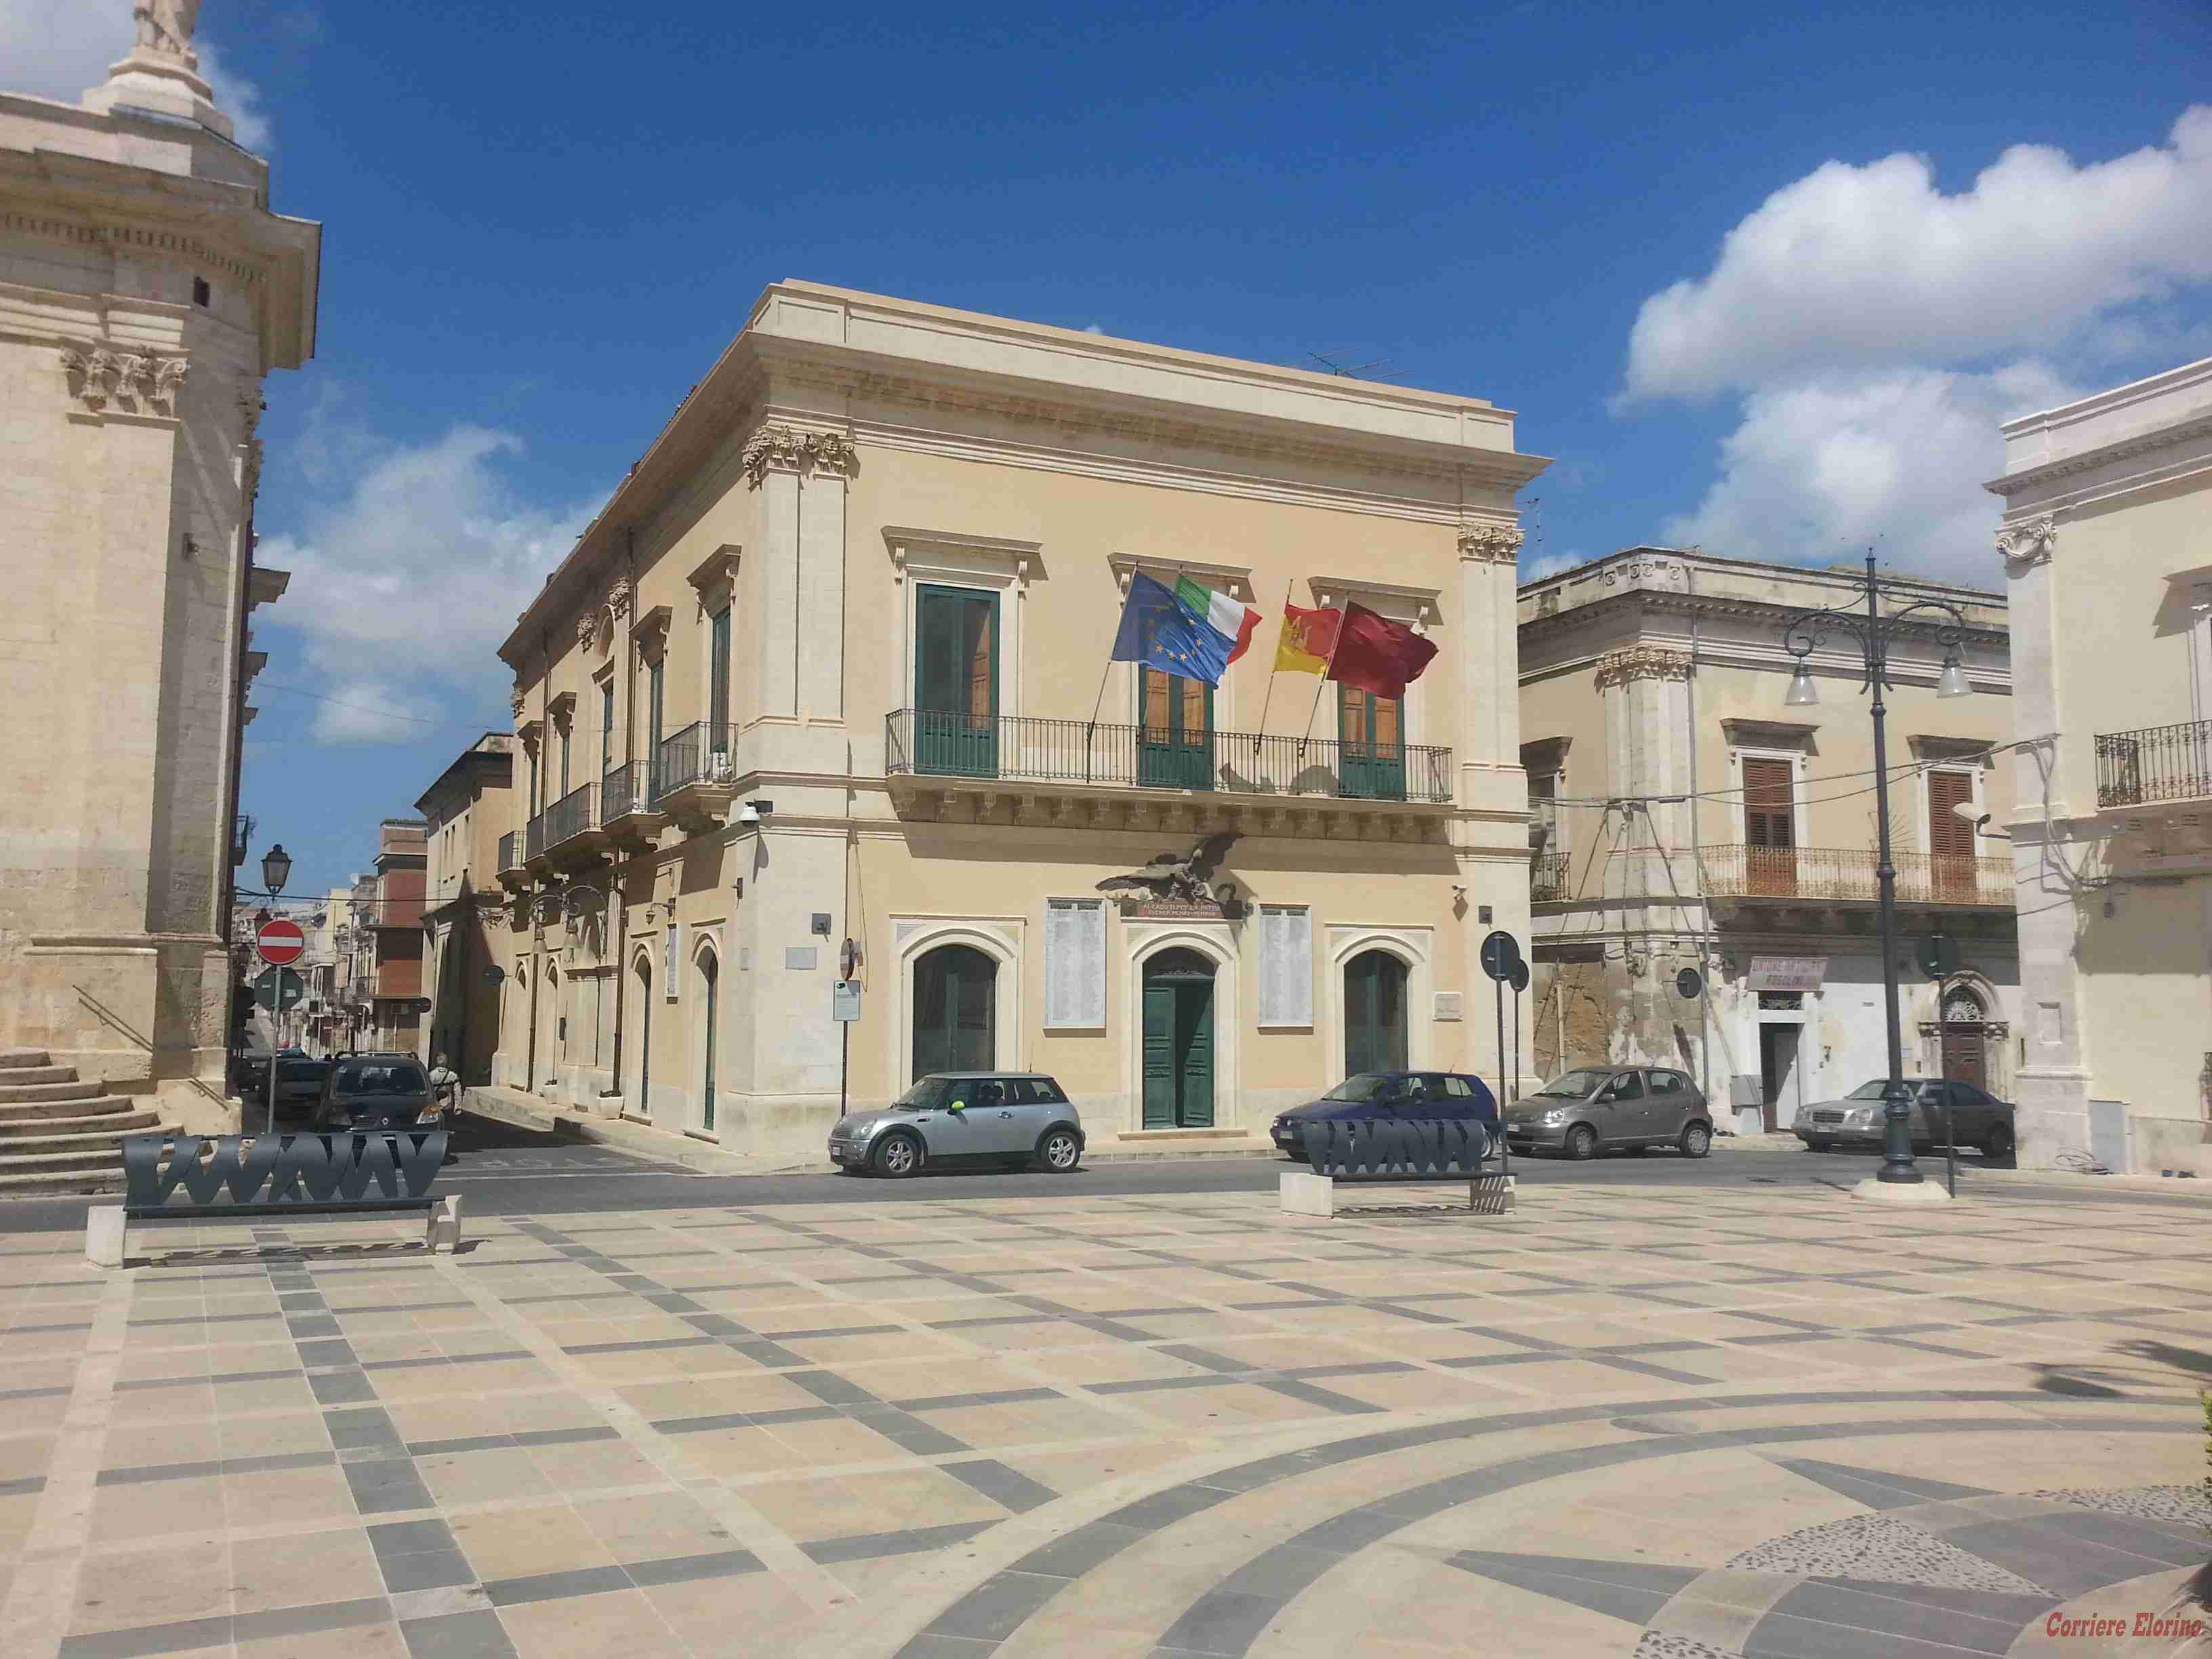 Venerdì 3 luglio consiglio comunale aperto: “Ordine pubblico, sicurezza e legalità” a Rosolini